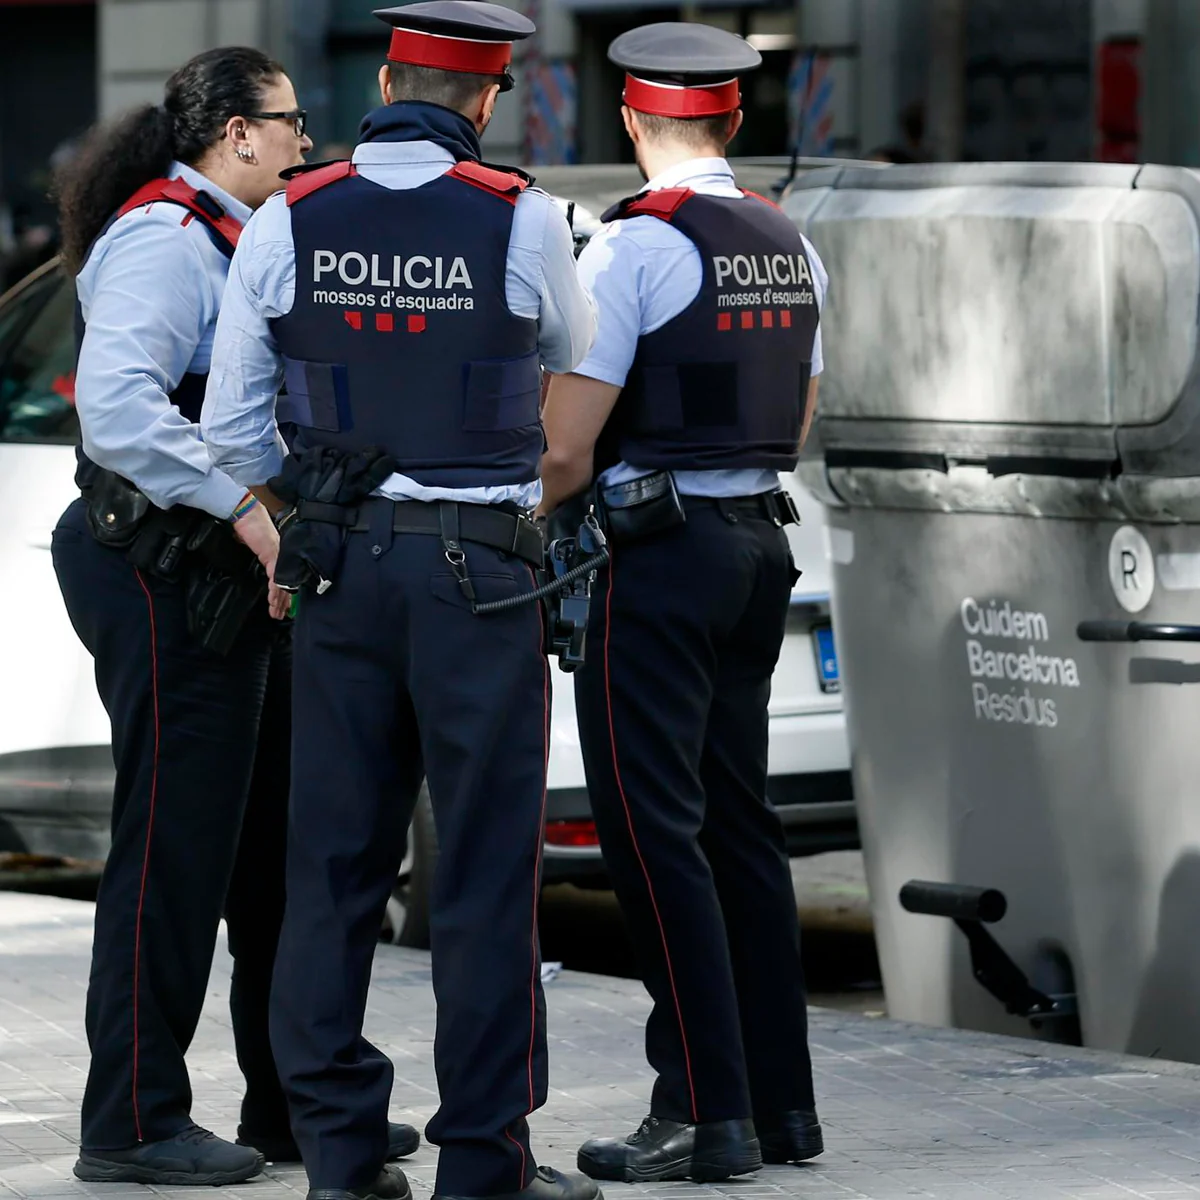 Un chatarrero y un cuerpo perdido: lo que se sabe del hallazgo de un torso en una maleta en Barcelona